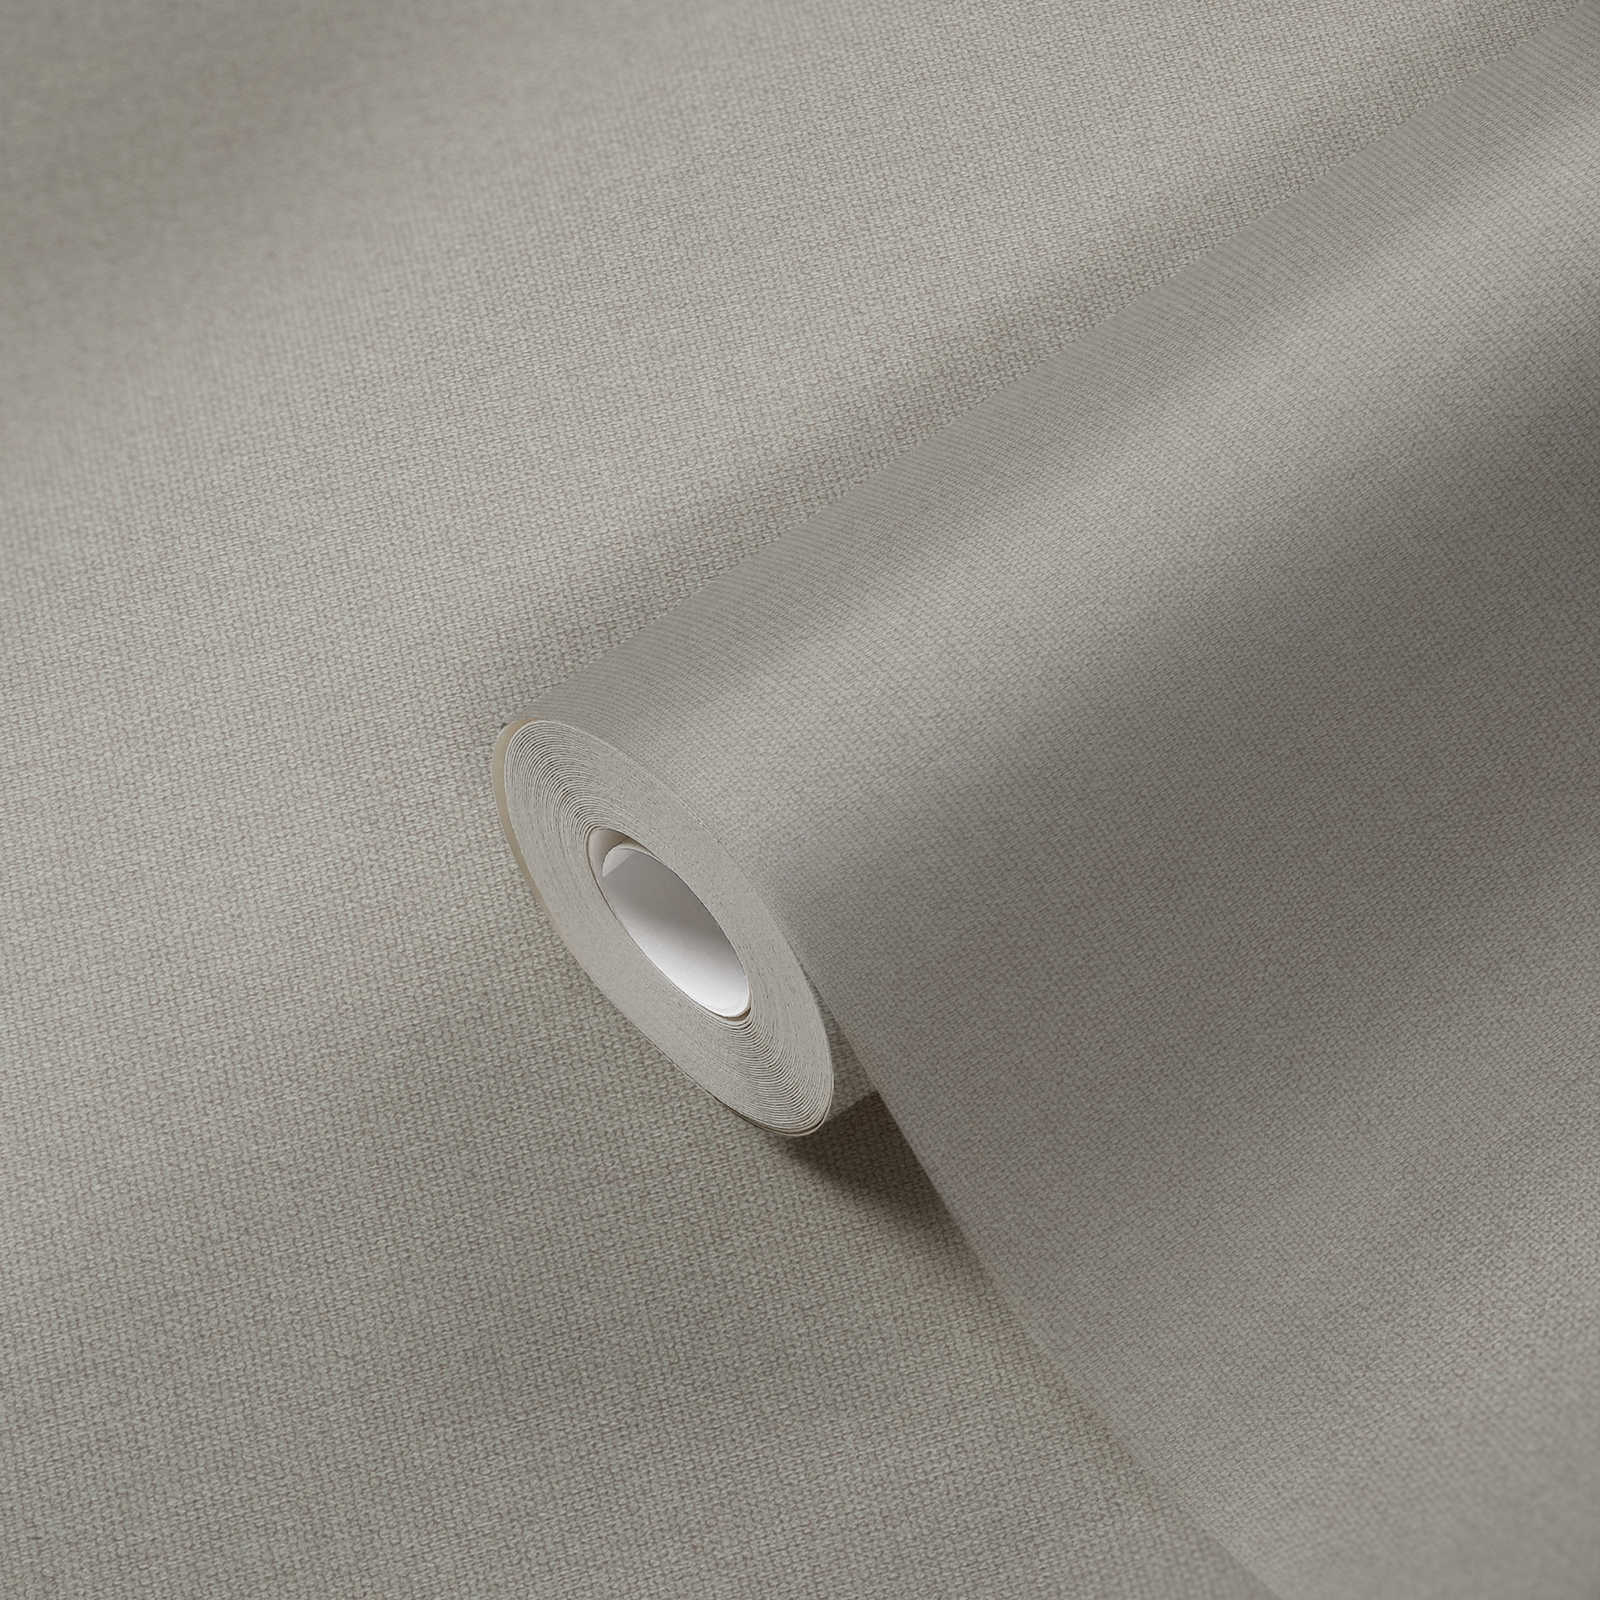             Papel pintado no tejido con aspecto de lino con detalles de estructura, liso - gris, beige
        